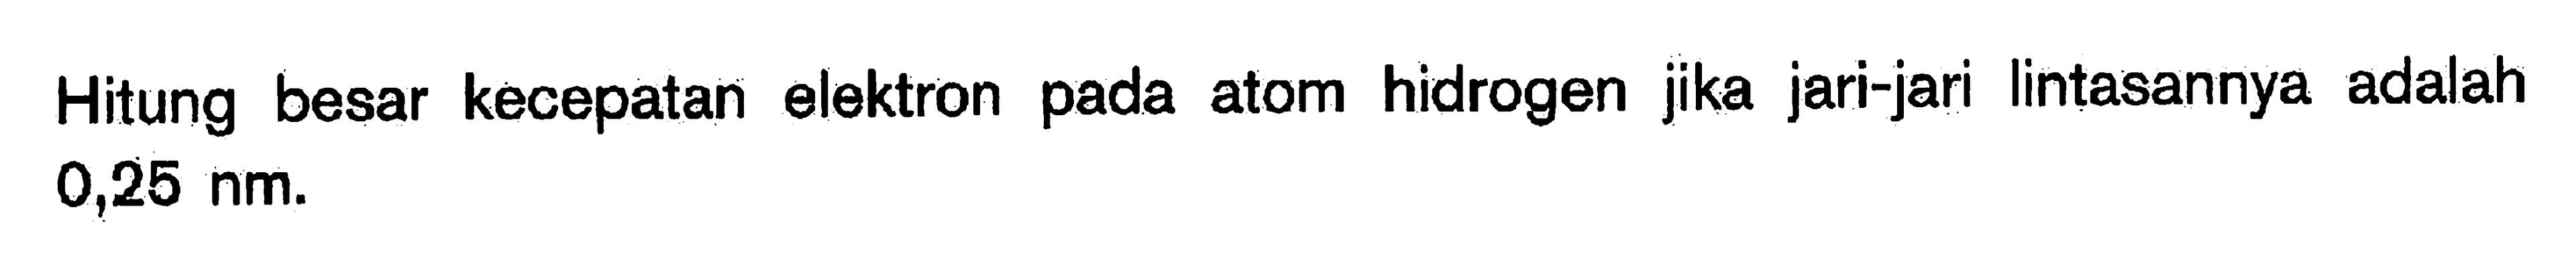 Hitung besar kecepatan elektron pada atom hidrogen jika jari-jari lintasannya adalah 0,25 nm.